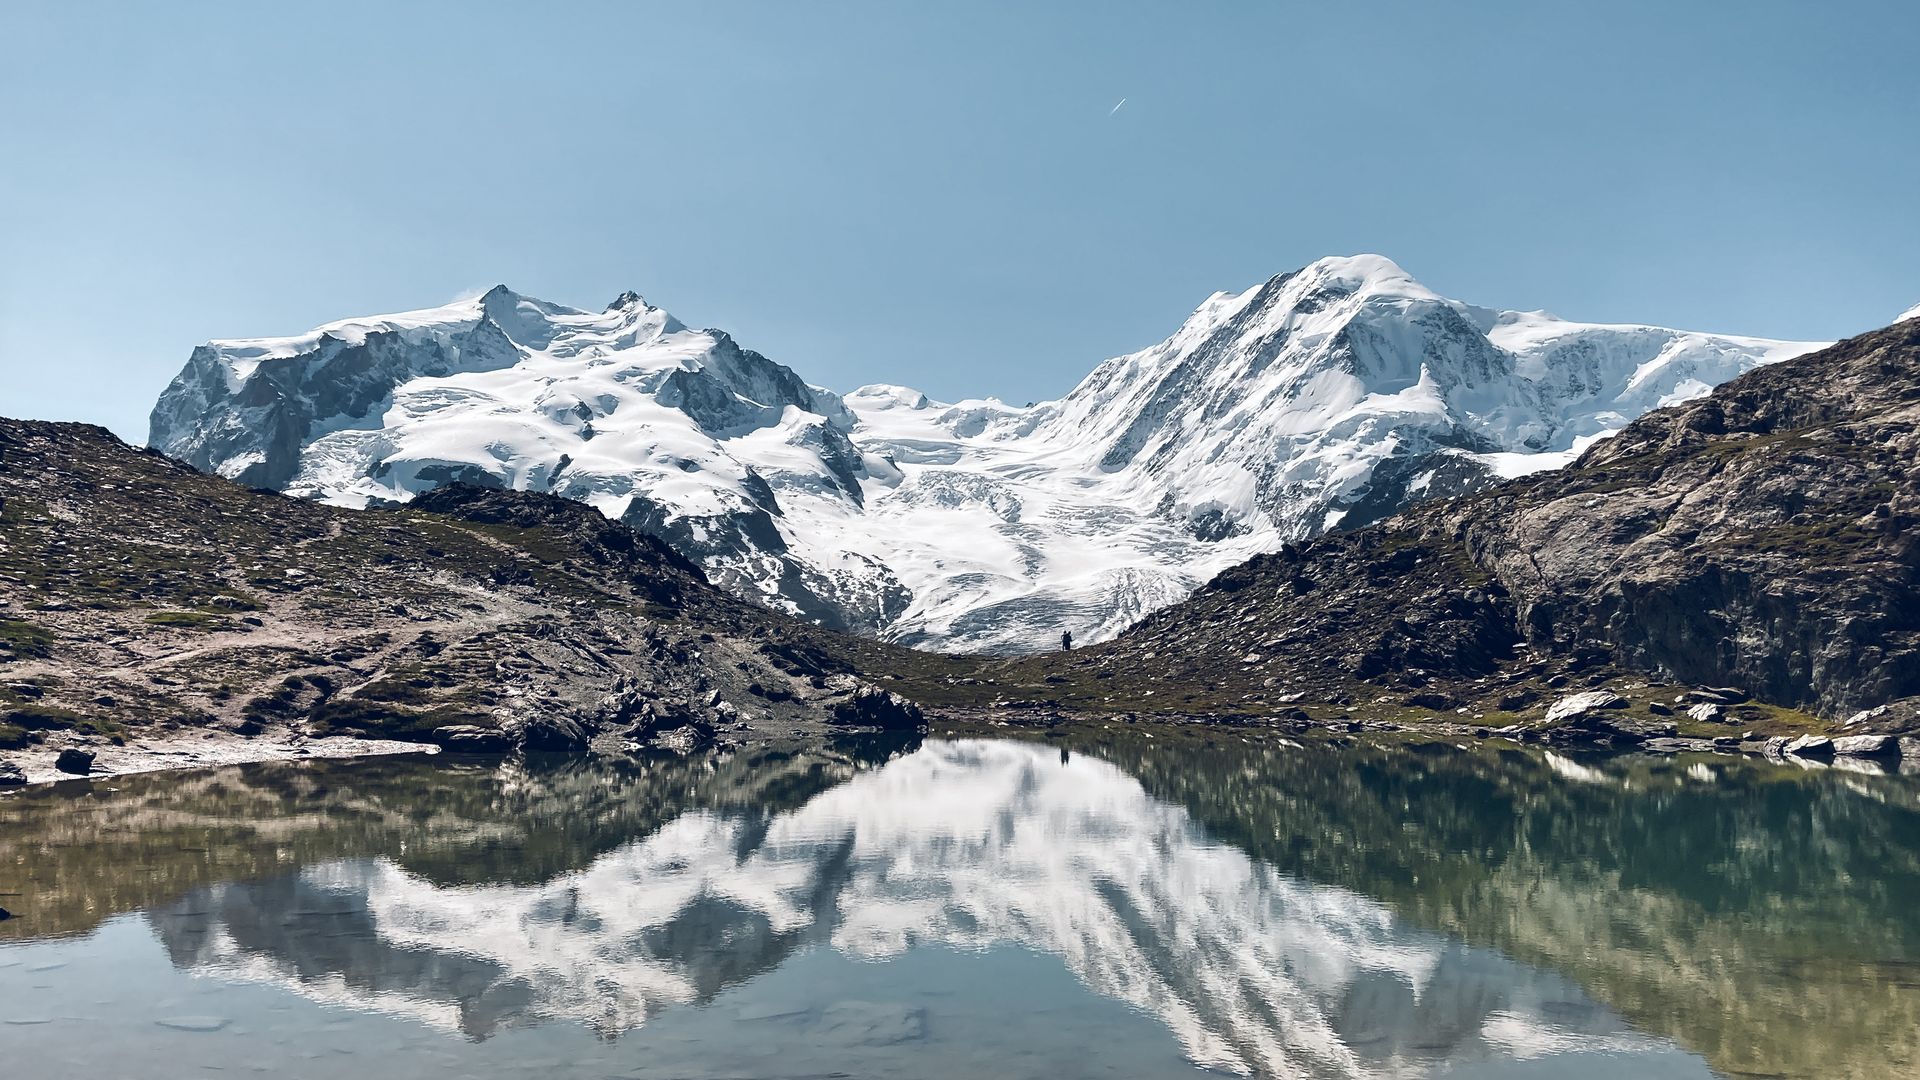 Riffelsee mit Dufourspitze, Breithorn und Gletscher, Zermatt, Schweiz